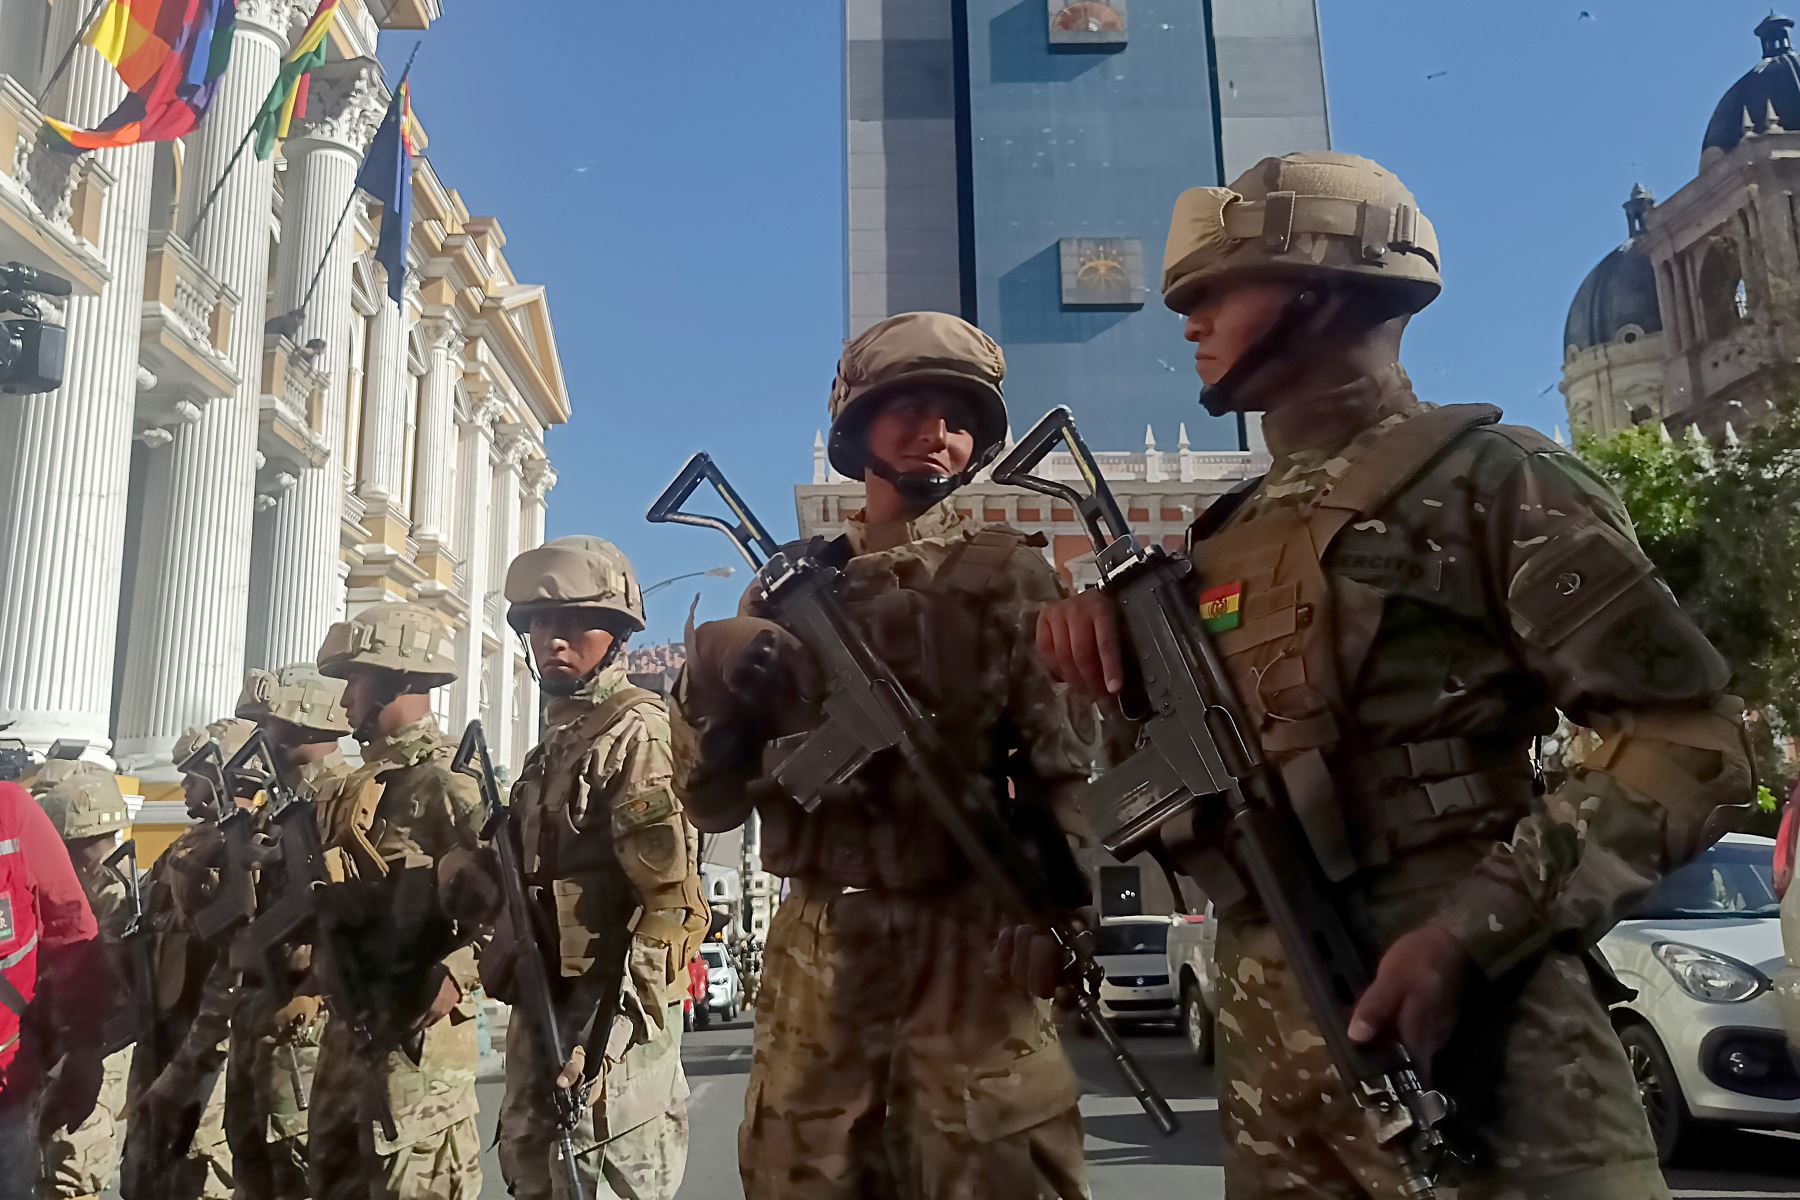 El presidente de Bolivia denuncia "movilizaciones irregulares" de militares en La Paz.
Foto: EFE